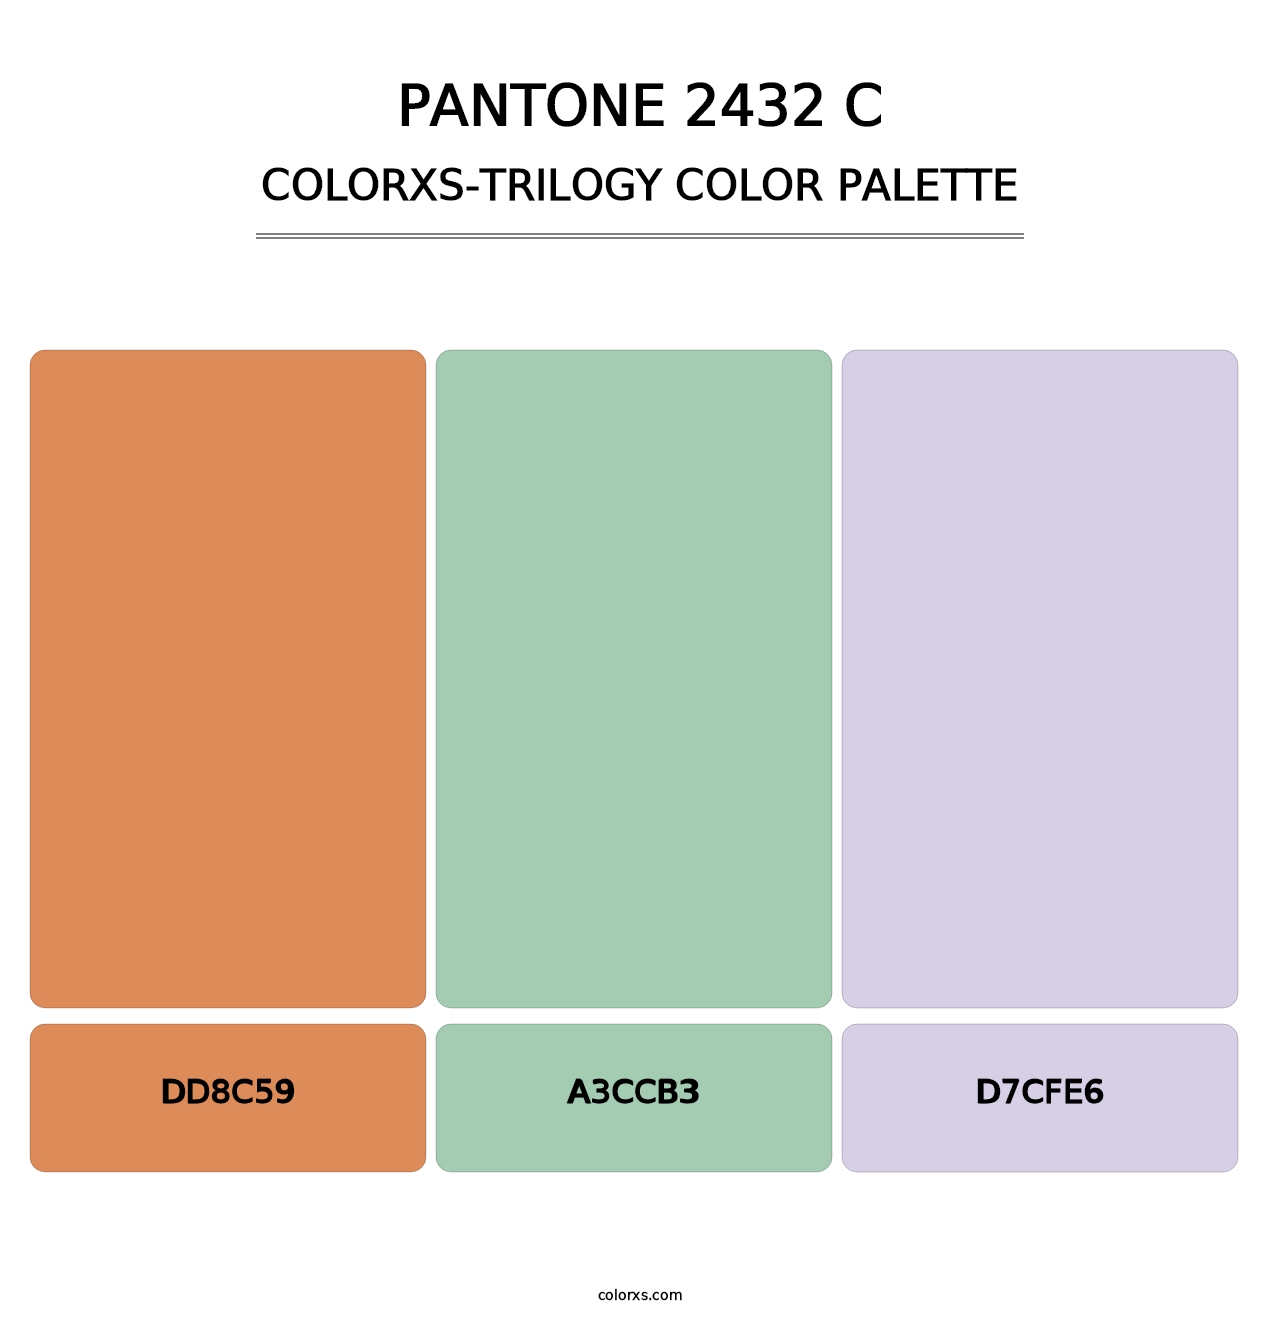 PANTONE 2432 C - Colorxs Trilogy Palette